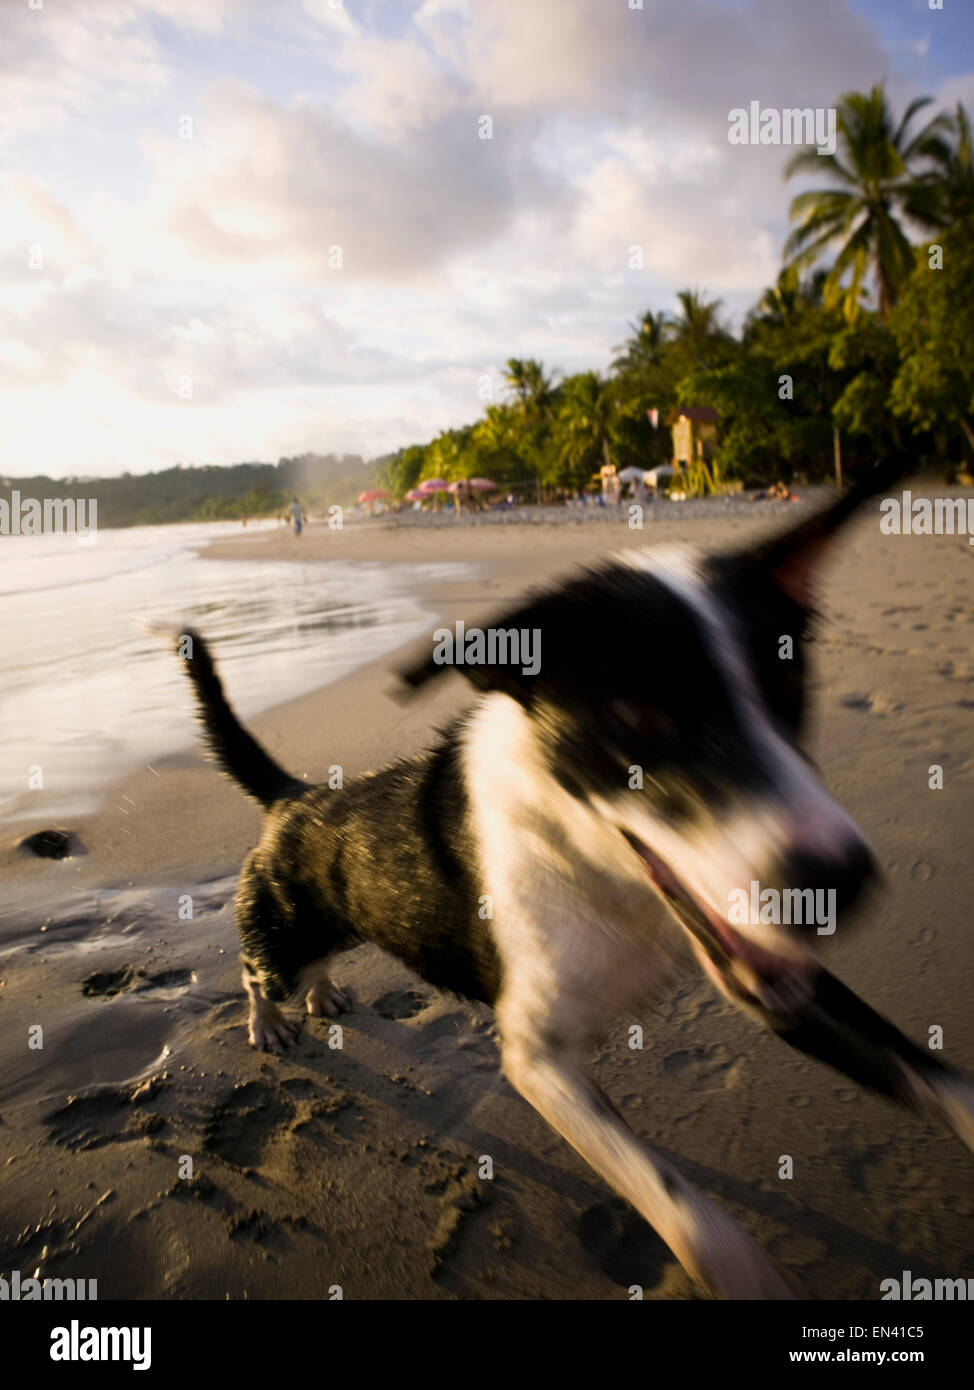 A dog on the beach Stock Photo